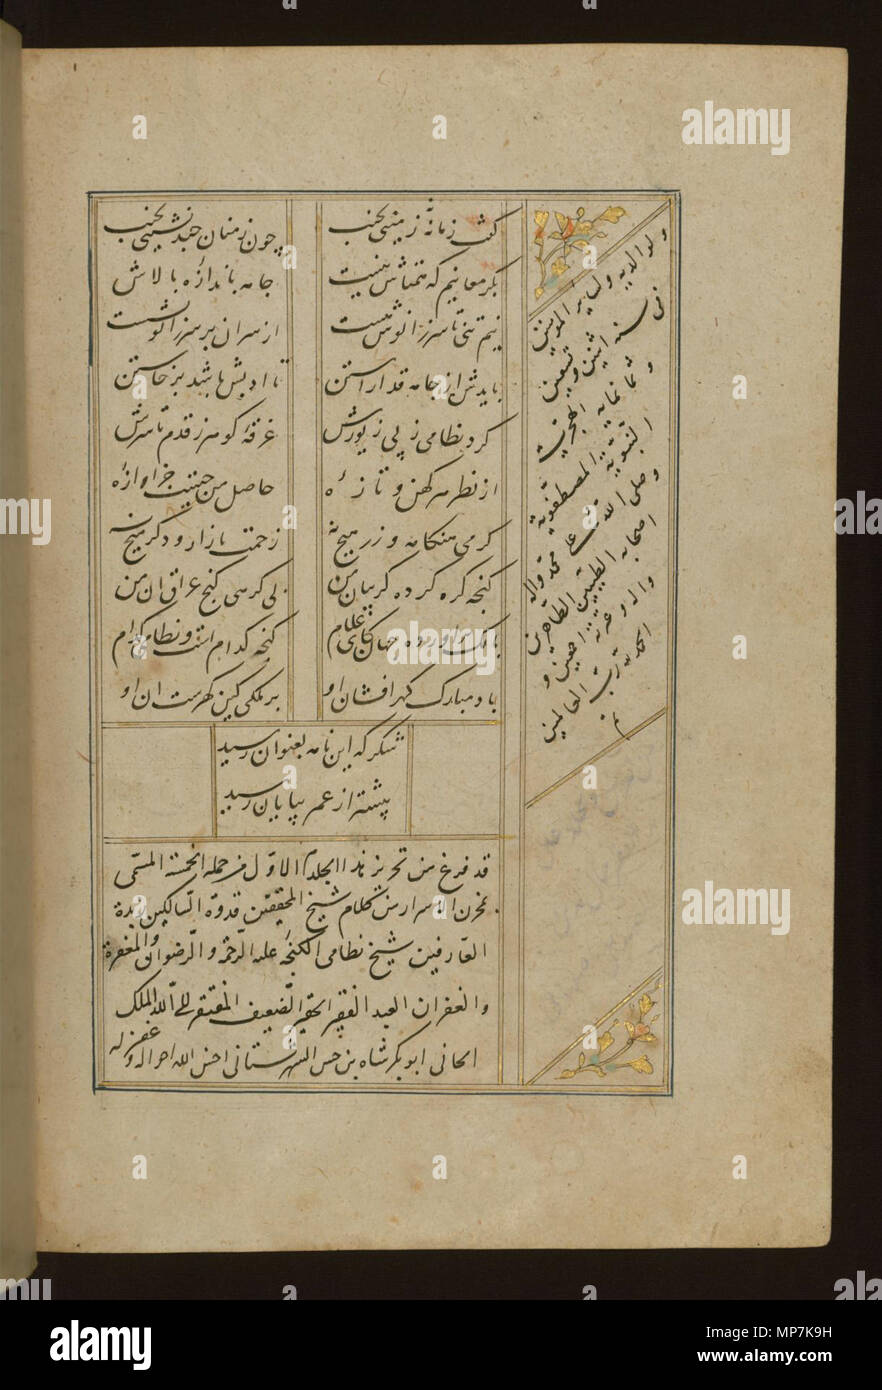 W.605.42b 692 Jamal al-Din Muhammad al-Siddiqi al-Isfahani - Colophon - Walters W60542B - Pagina completa Foto Stock